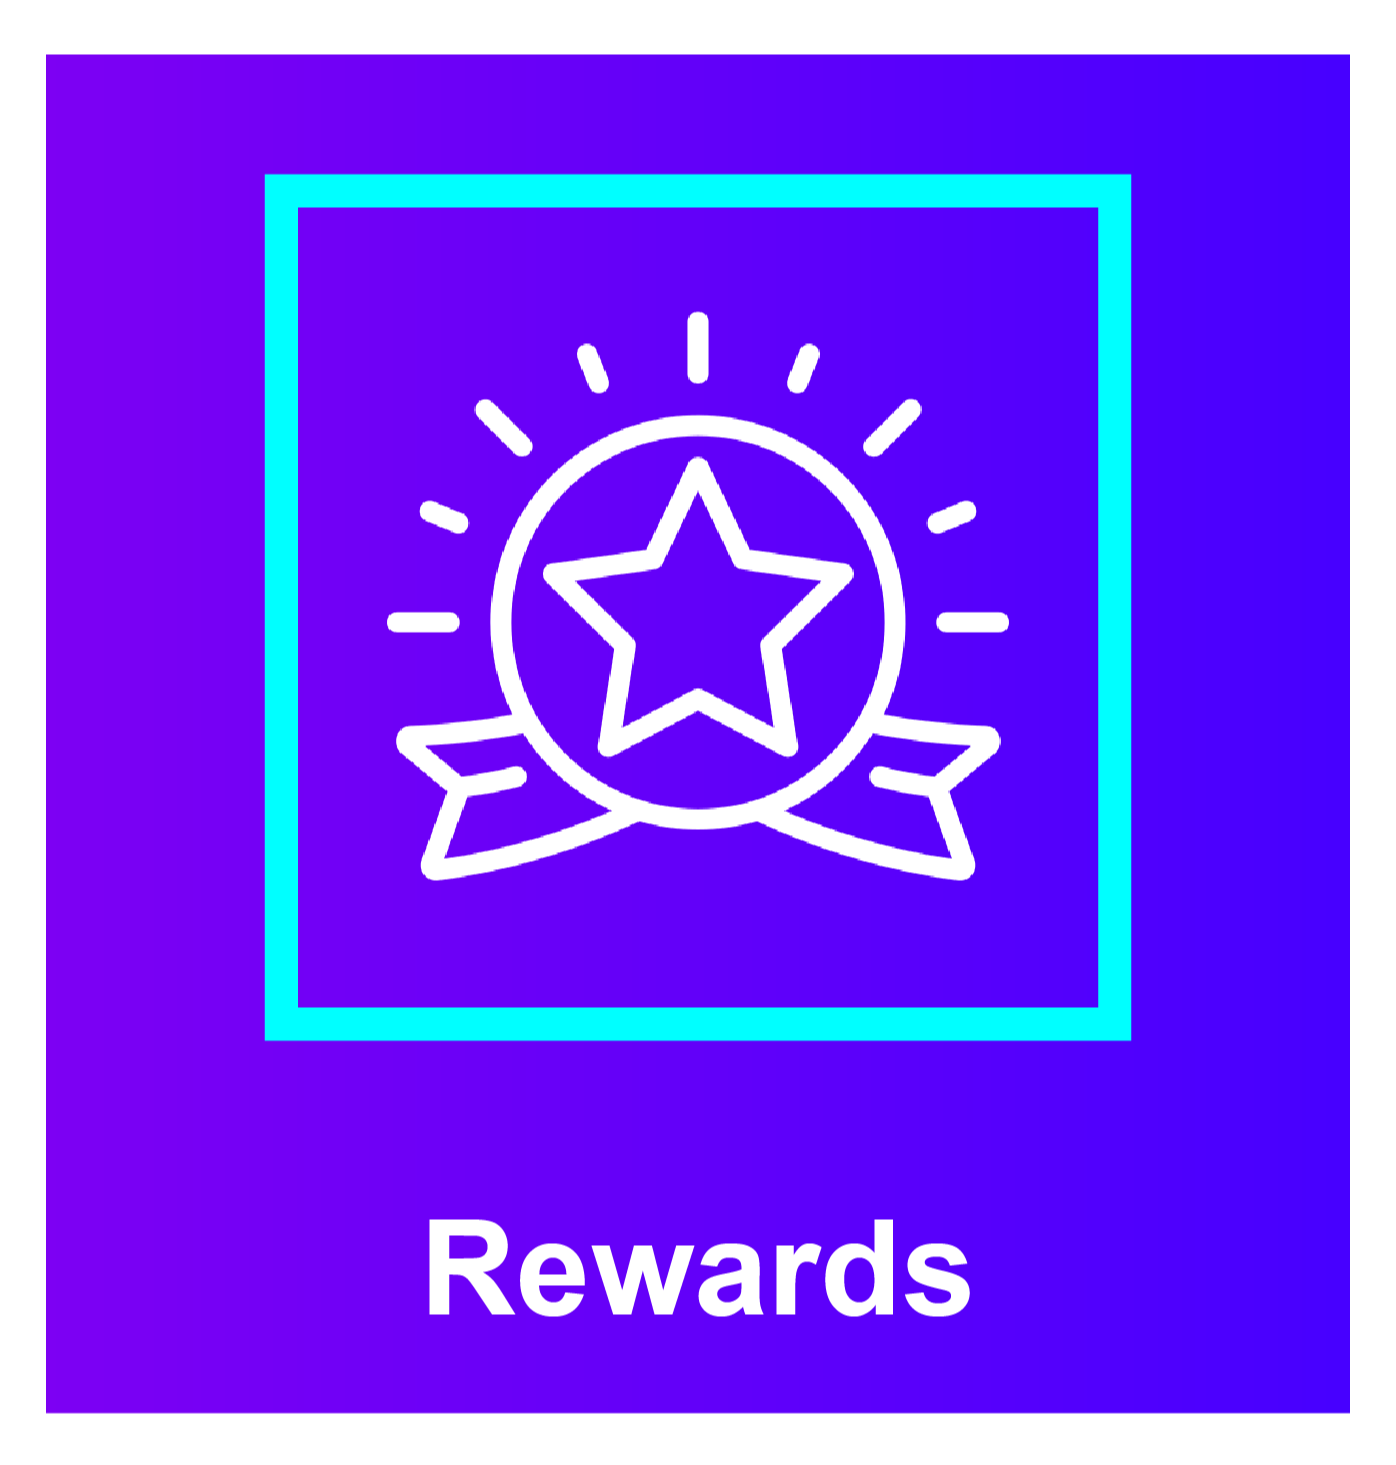 Awards_Rewards_Image